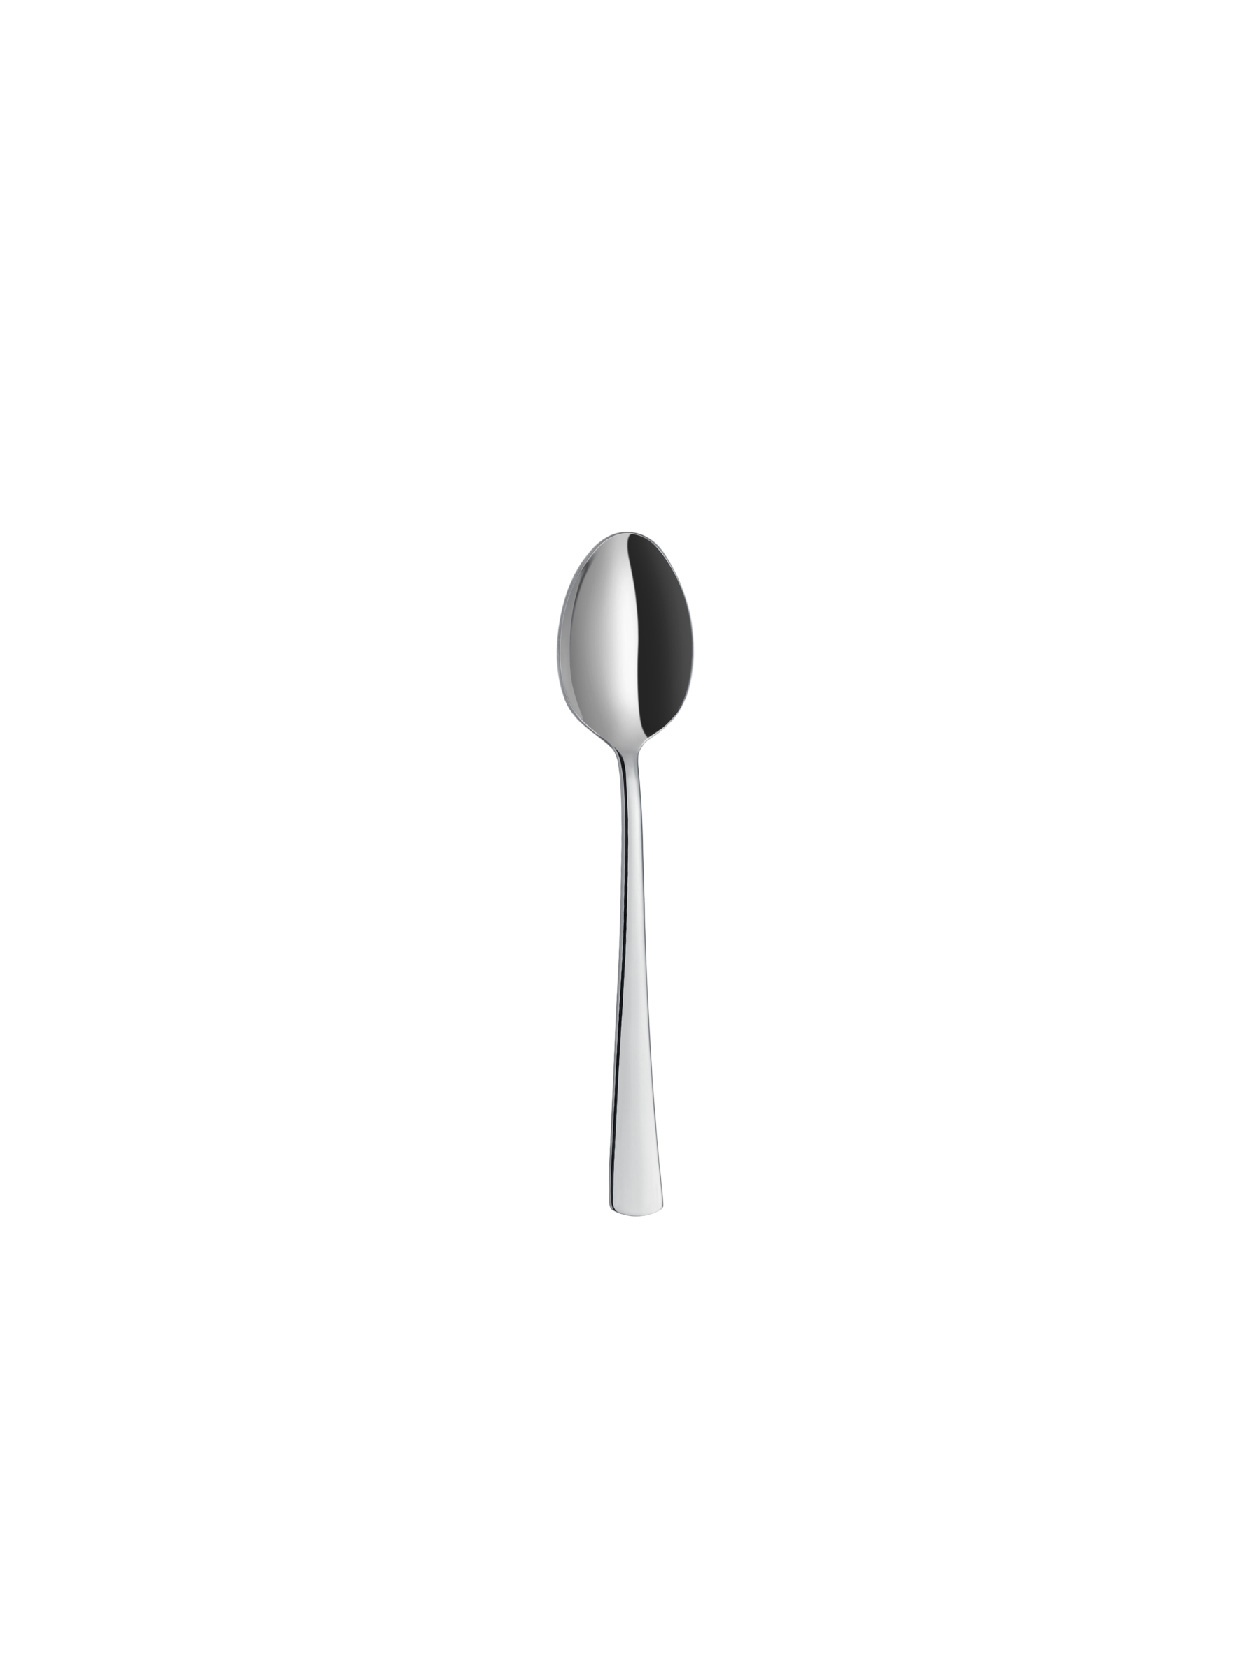 Halley - Plain - Tea Spoon (6 Pcs)